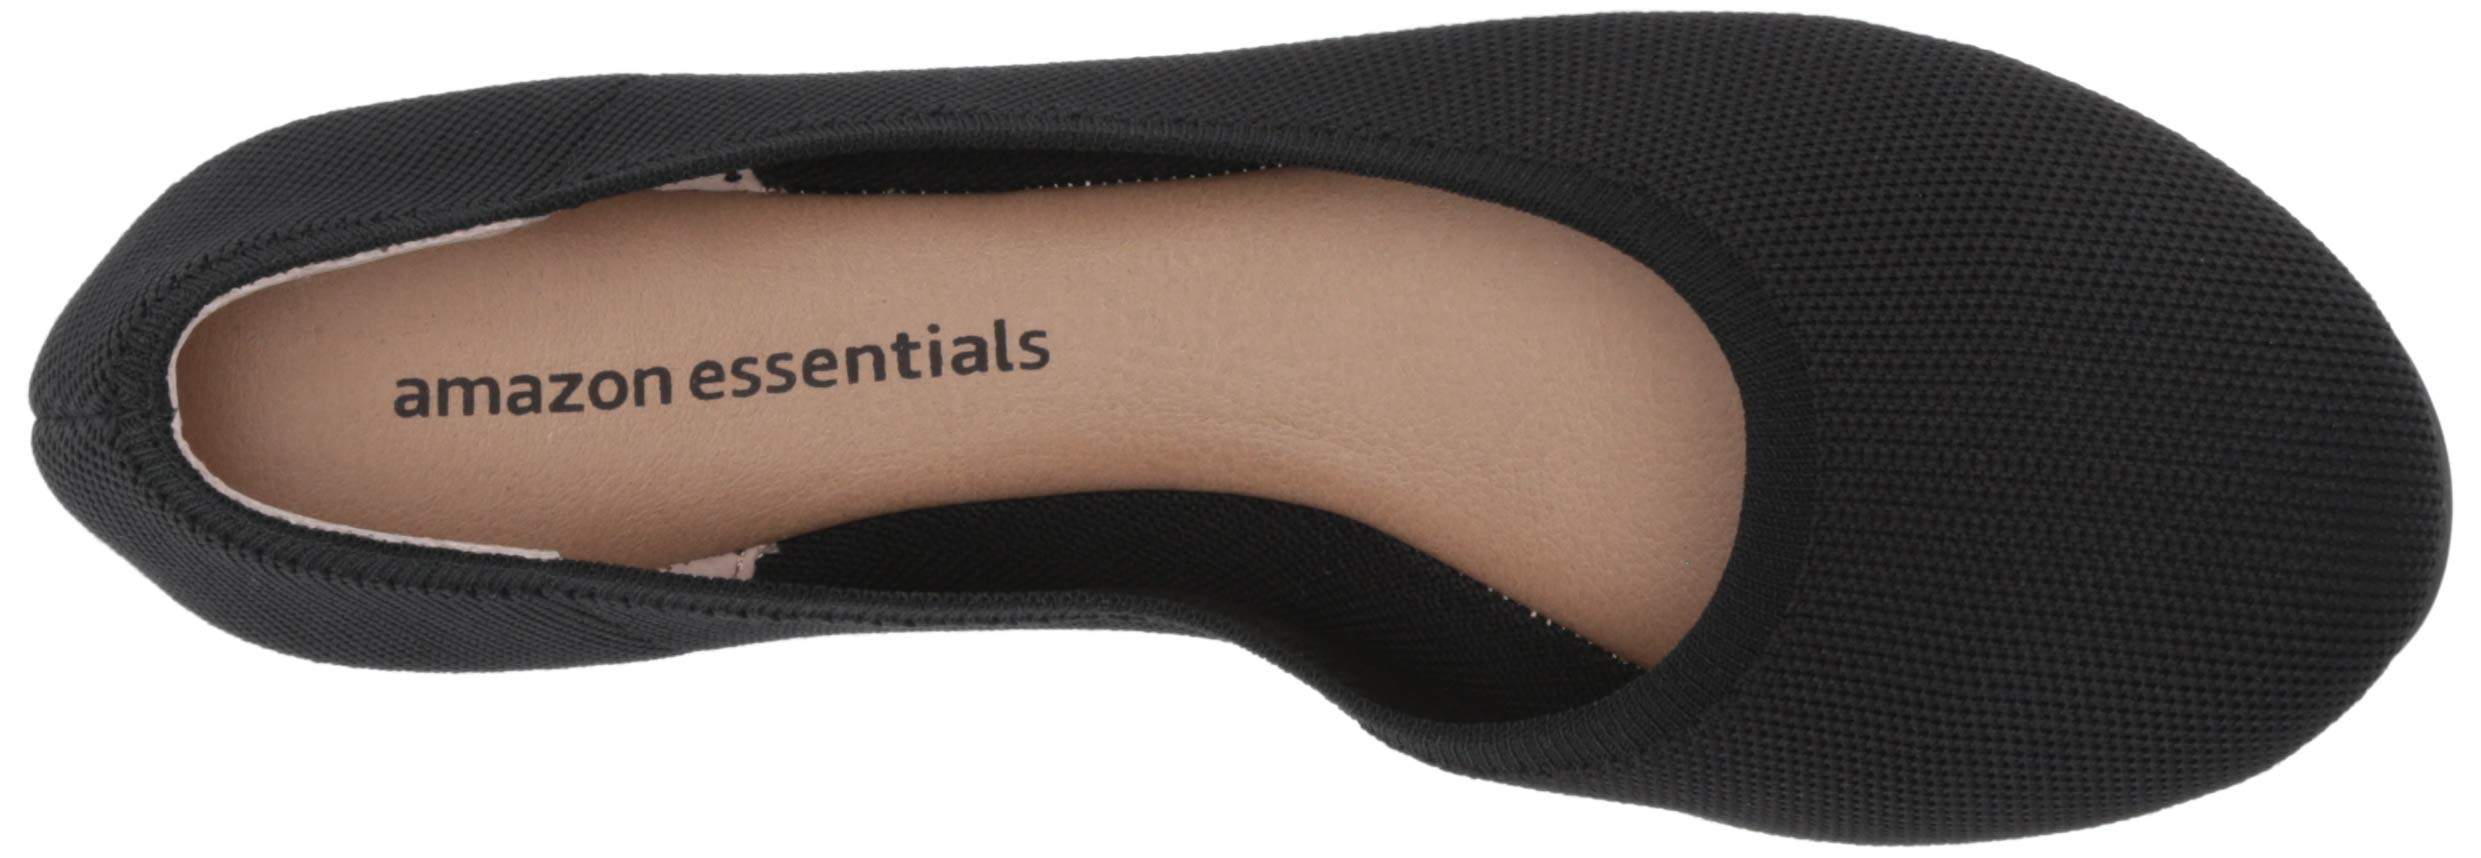 Amazon Essentials Women's Knit Ballet Flat